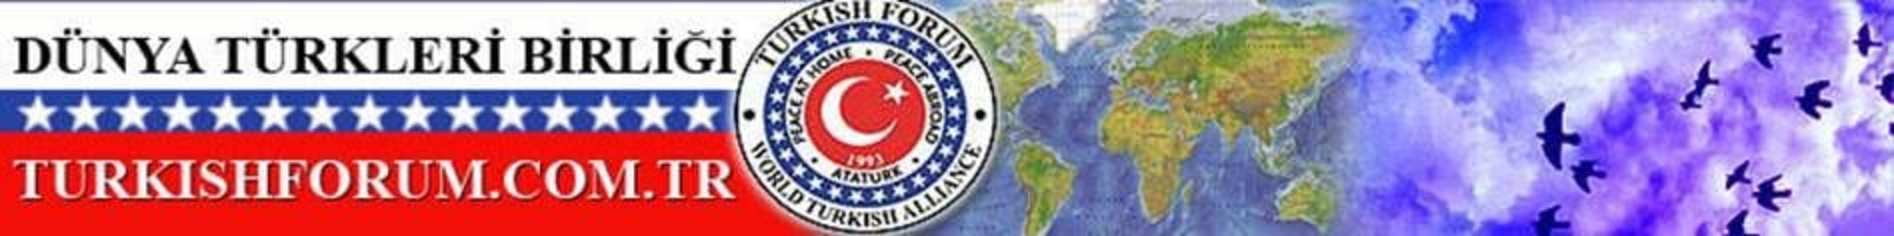 Sayın Doğu Perinçek 25 Mart 2020 tarihinde Aydınlık gazetesindeki köşesinde "Merhaba Kamuculuk-2: Bayburt’taki imama virüs bulaştı diye zil takanlara" başlıklı bir yazı yazmış. - turkish forum logo banner